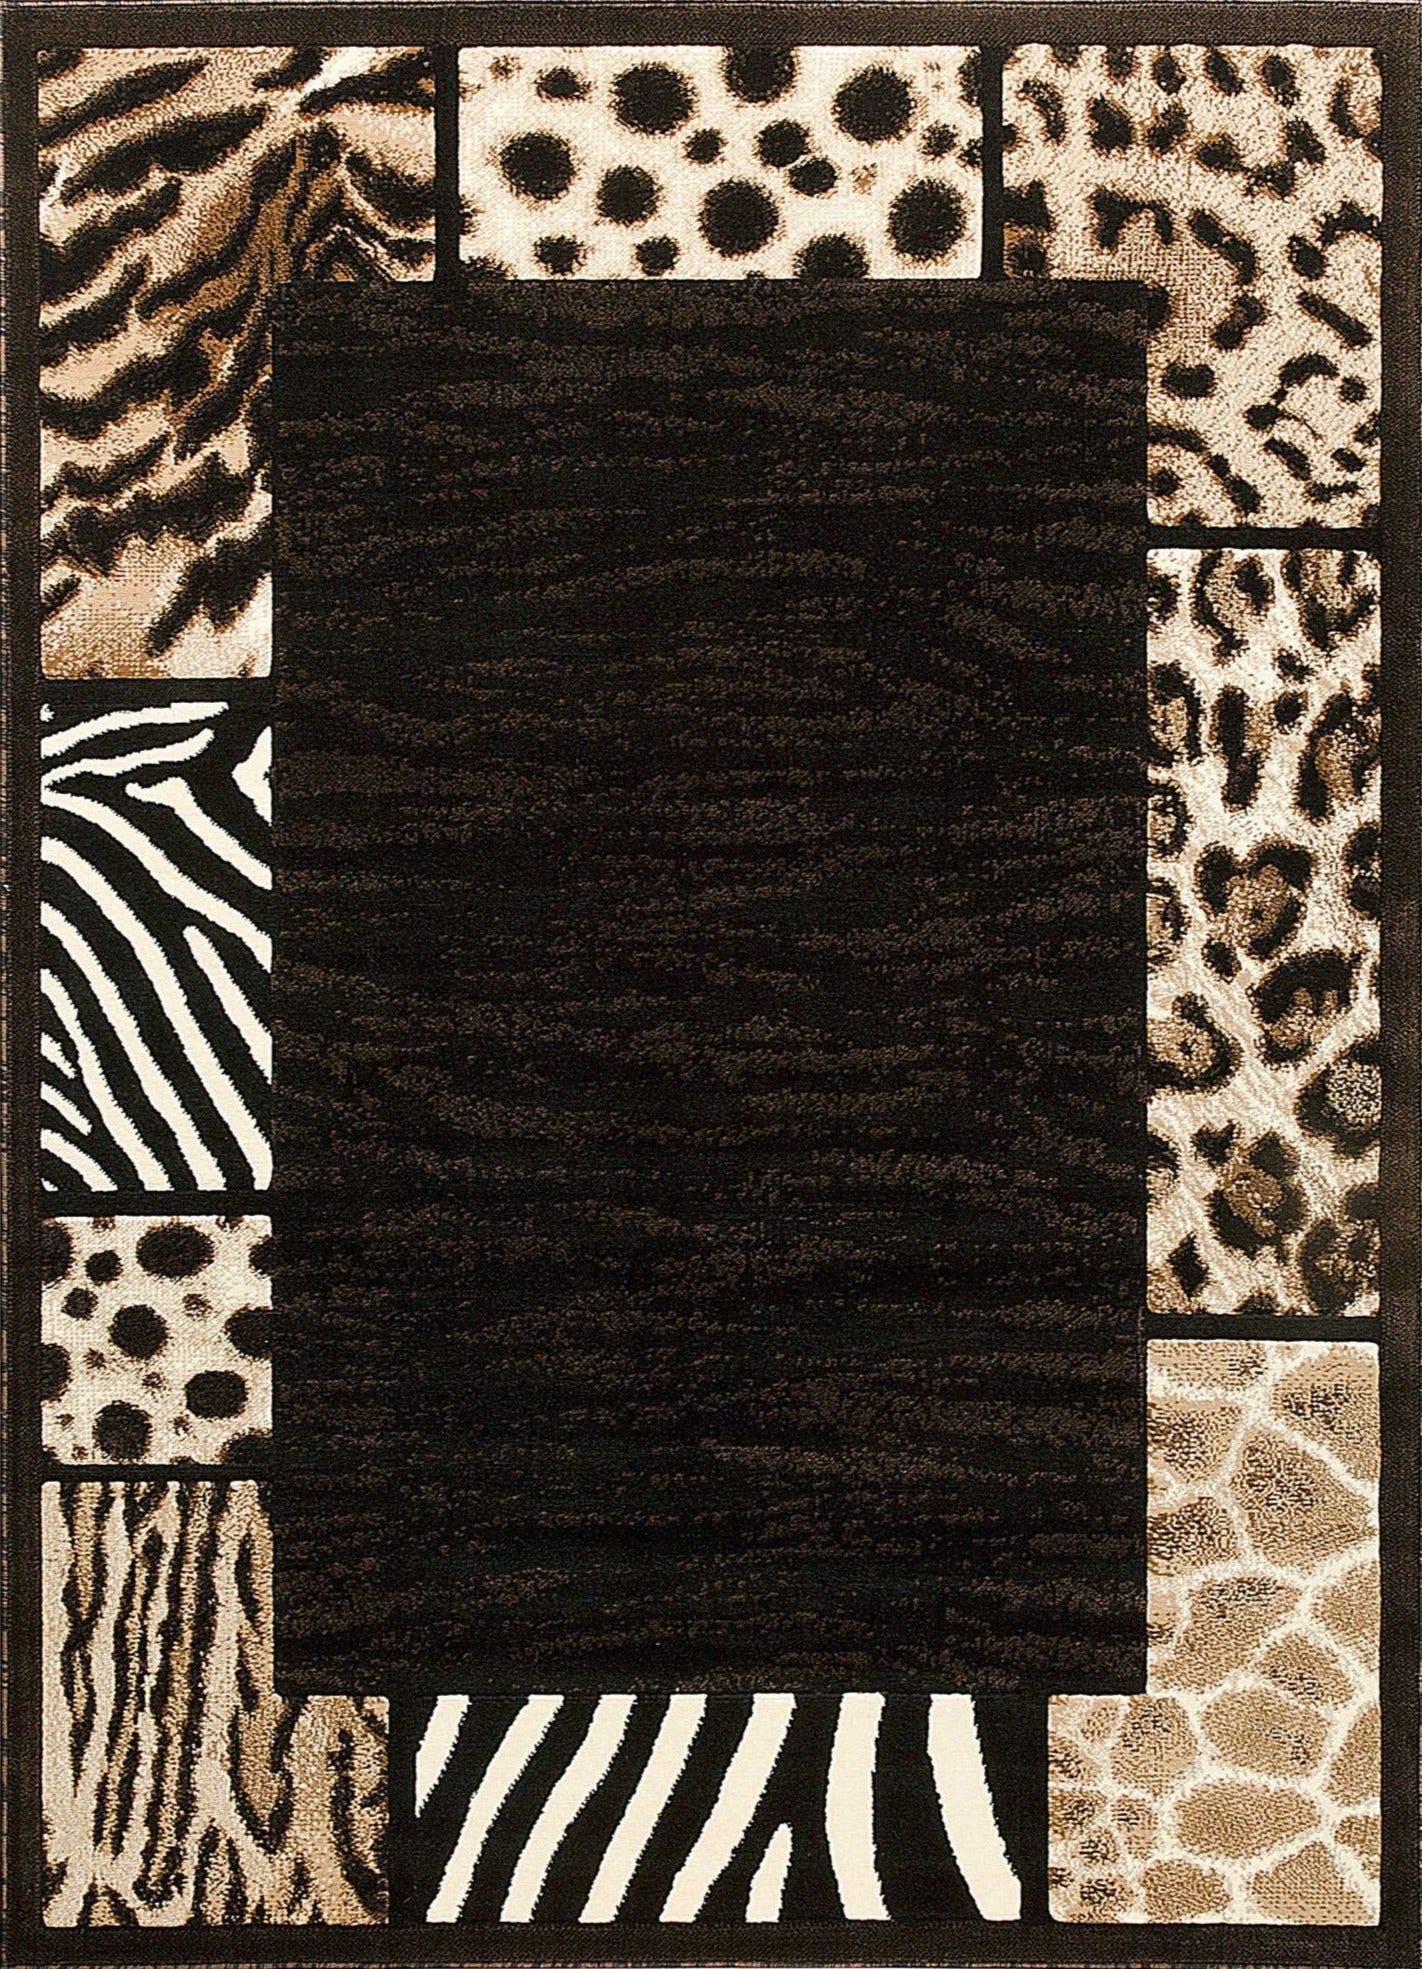 American cover design / Persian weavers Skinz-73 Animal Print Rug